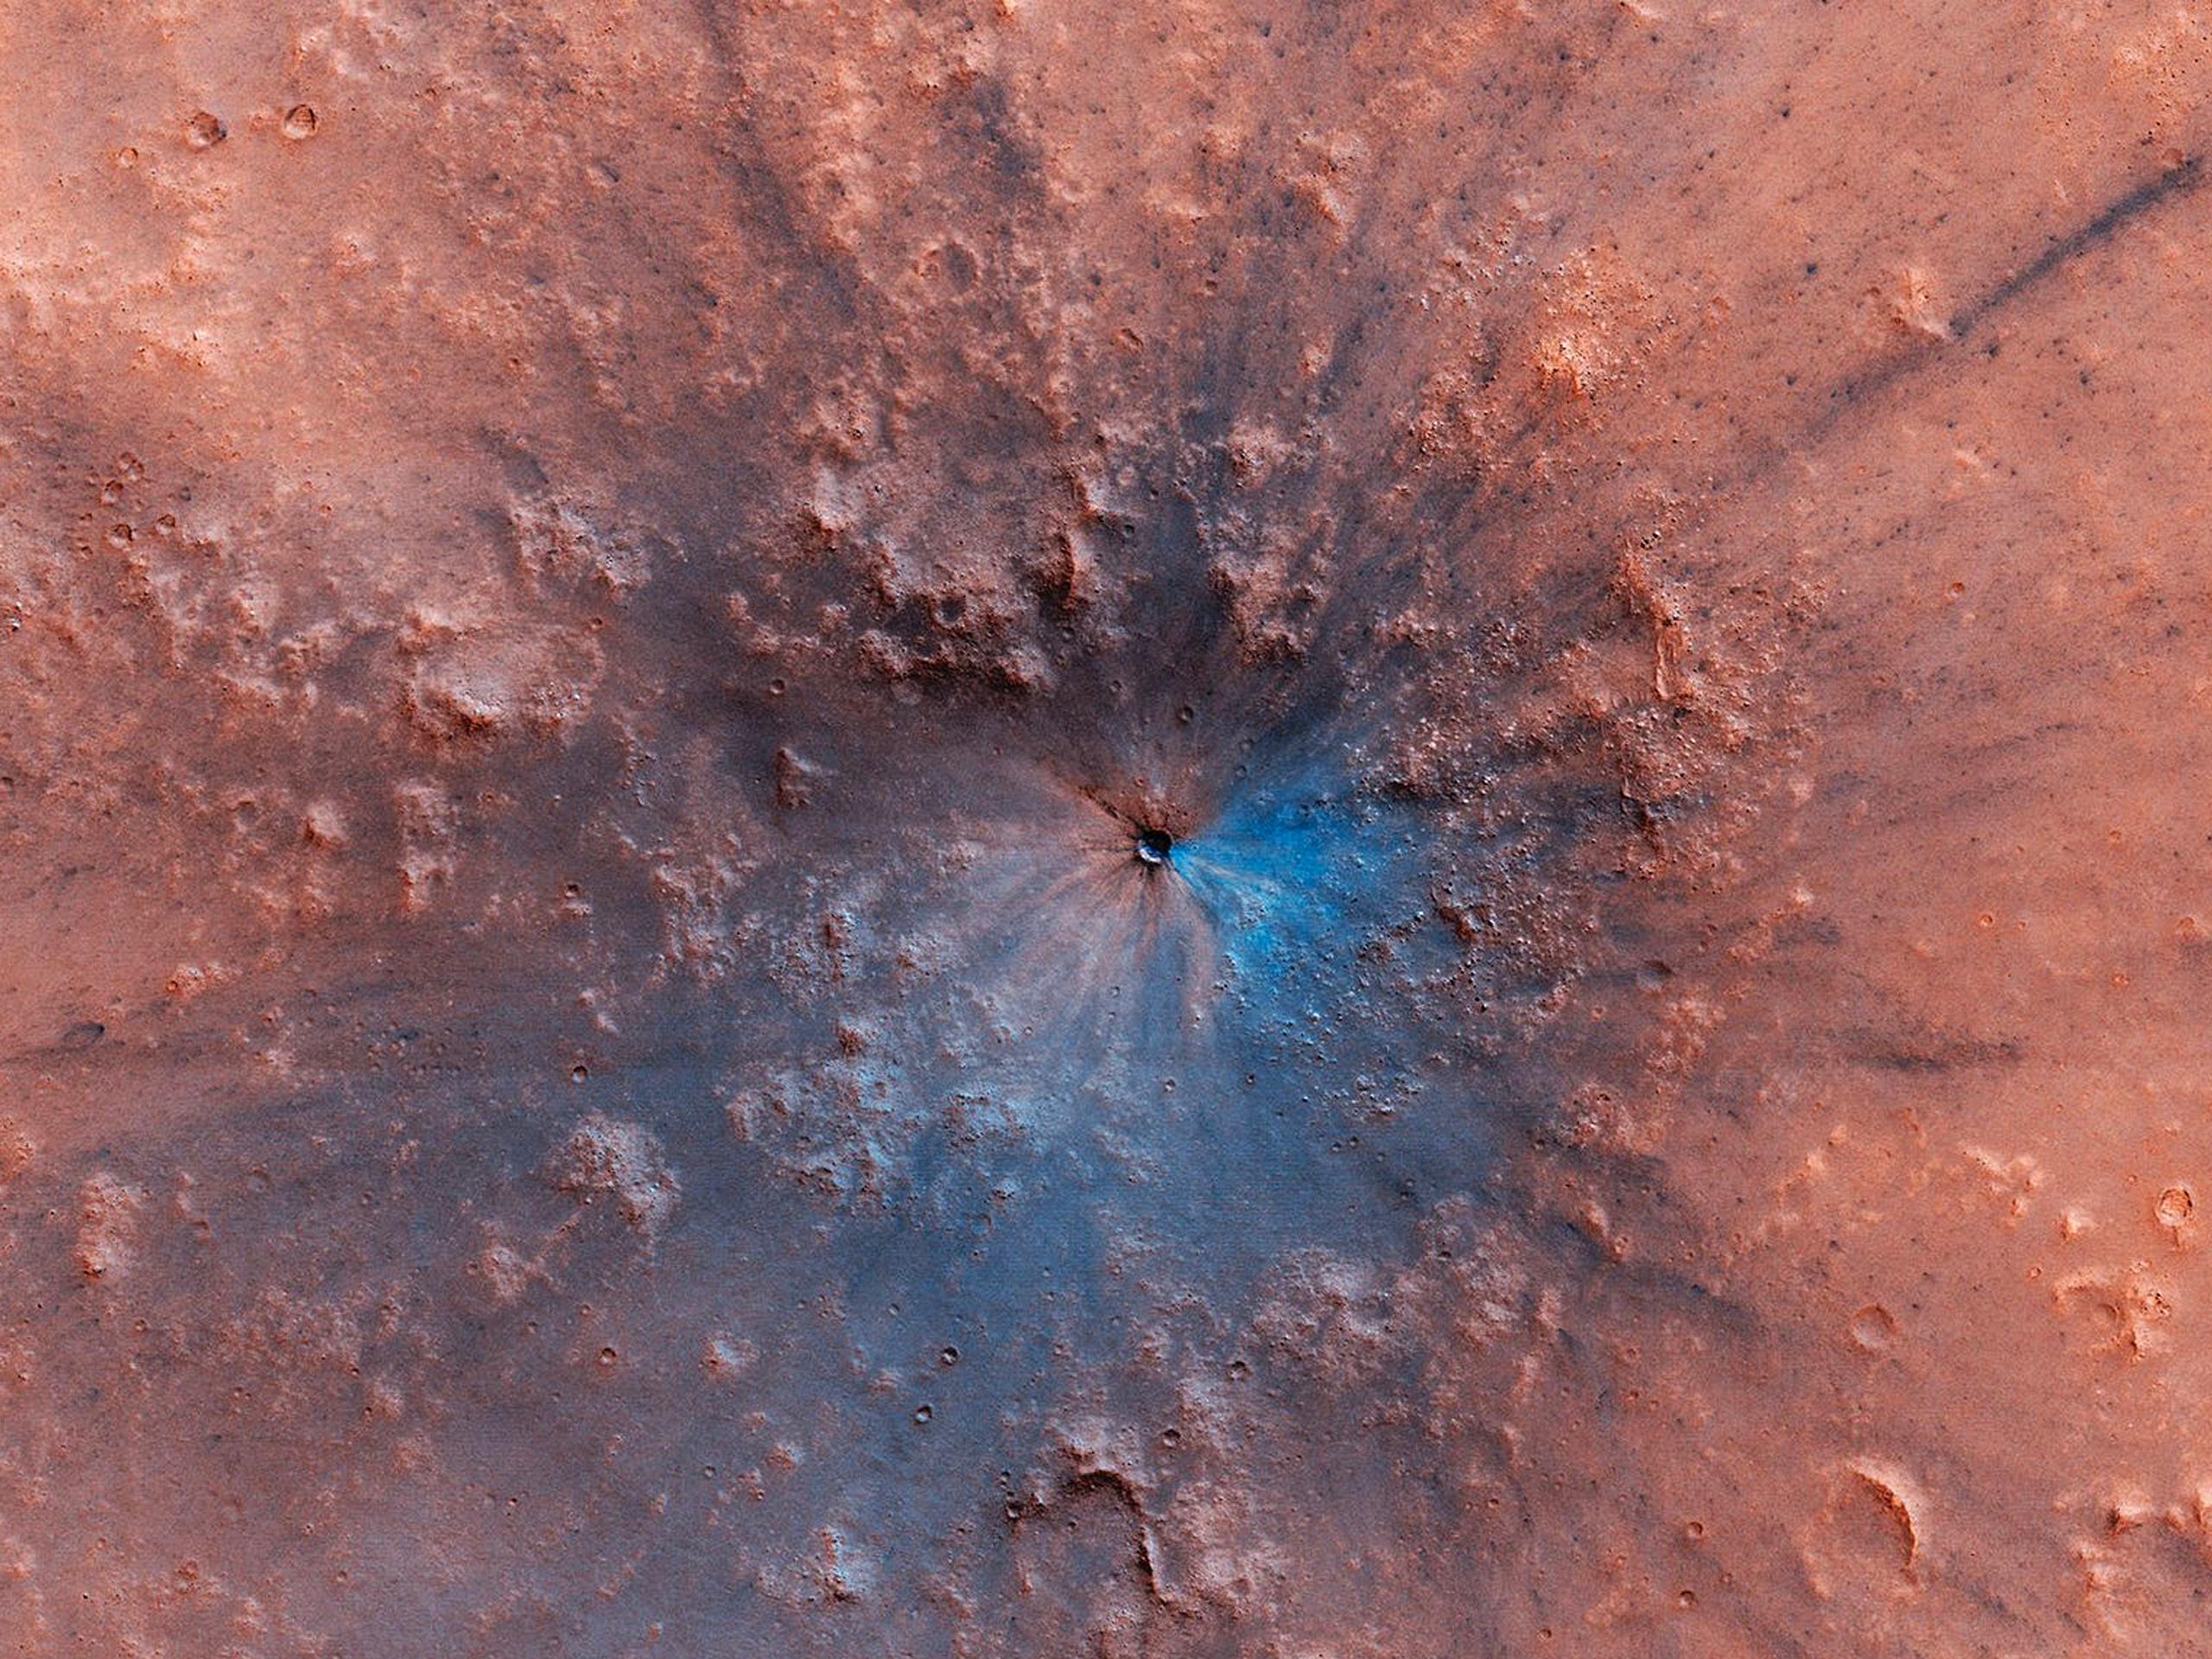 mars impact crater